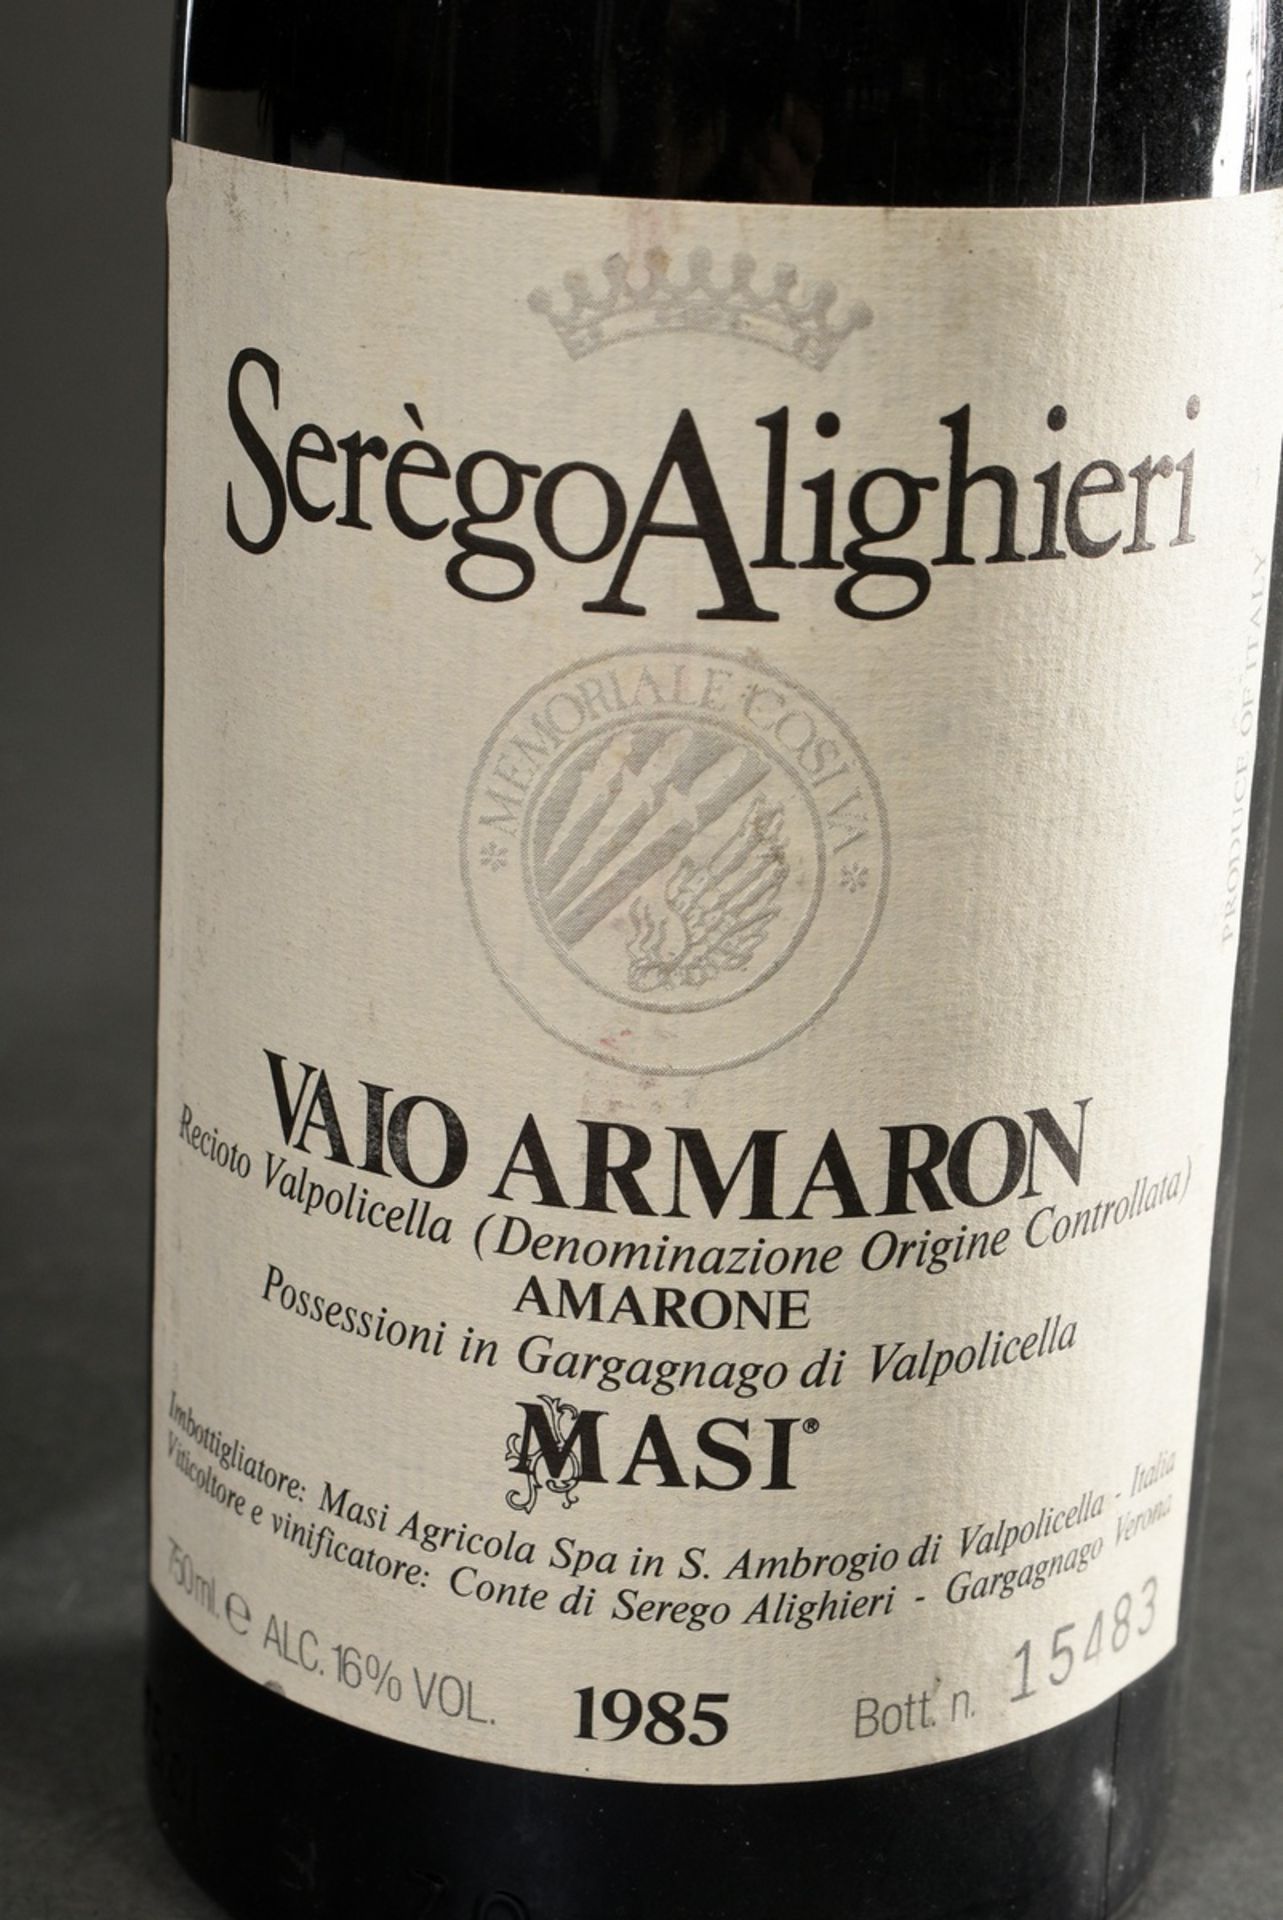 2 Bottles 1985 Masi Serego Alighieri Vaio Armaron, Valpolicella DOC, Red wine, Italy, 0,75l, hs - Image 2 of 4